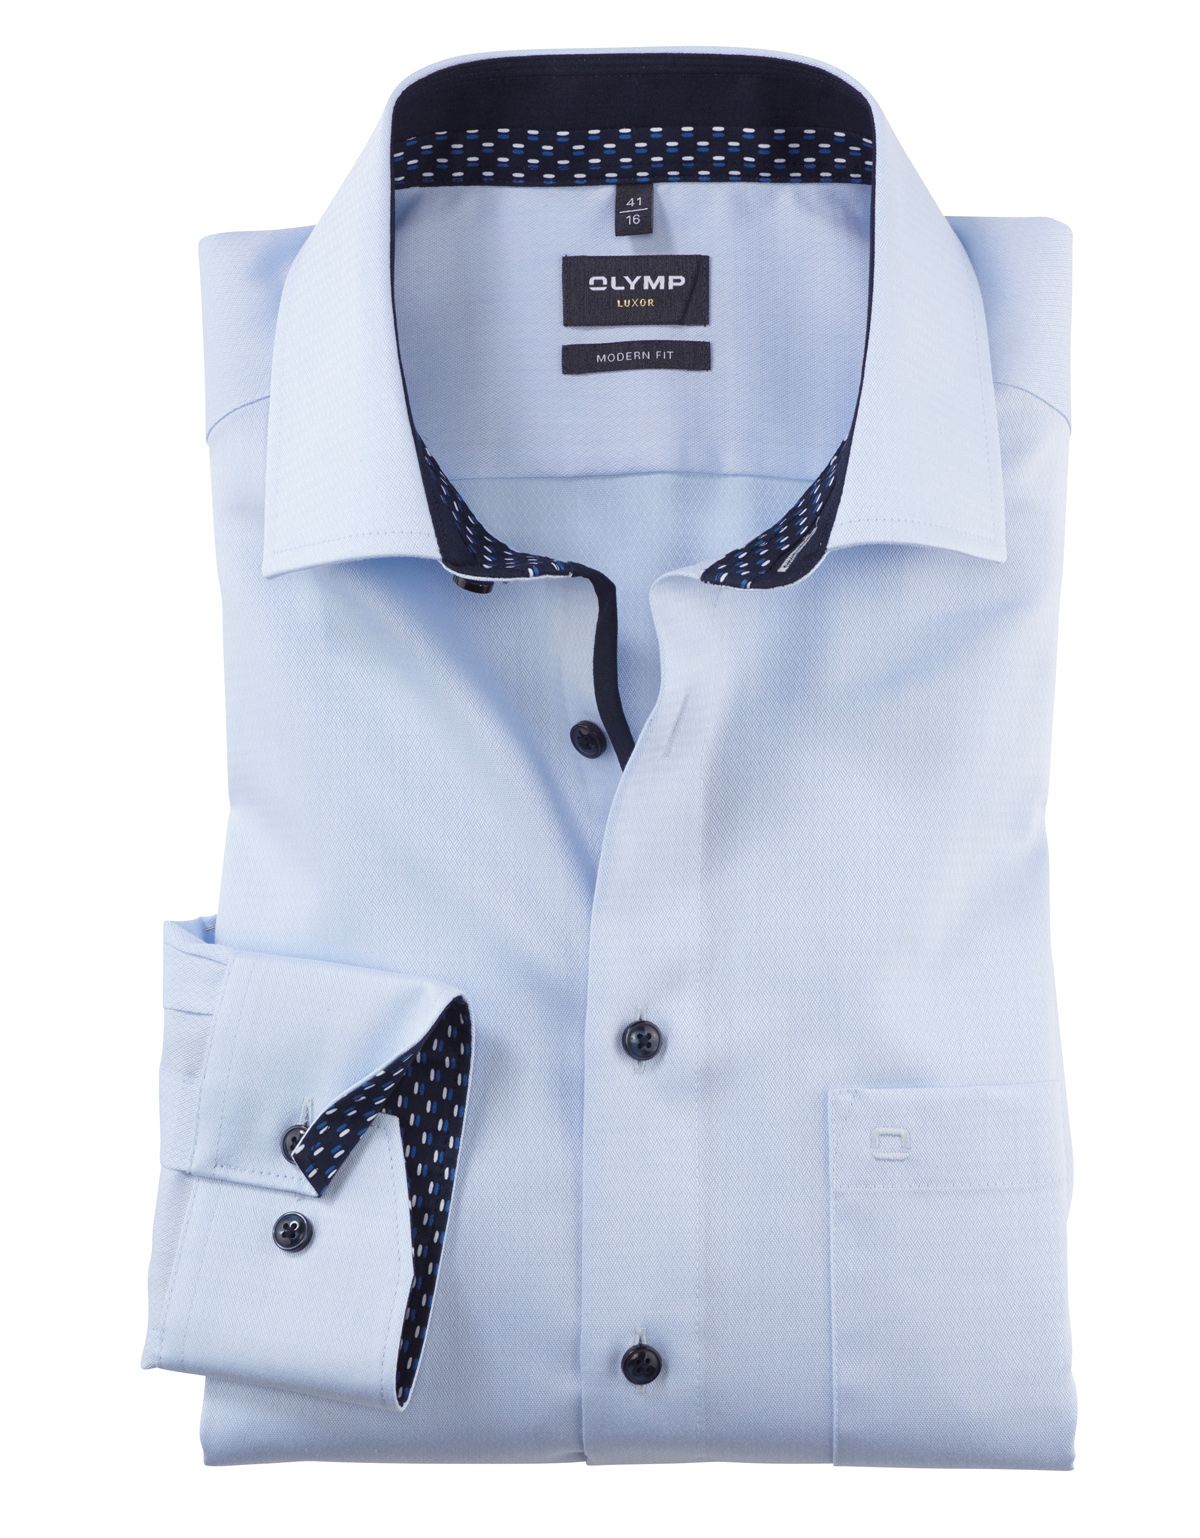 Рубашка мужская OLYMP Luxor, modern fit, фактурная ткань[ГОЛУБОЙ]